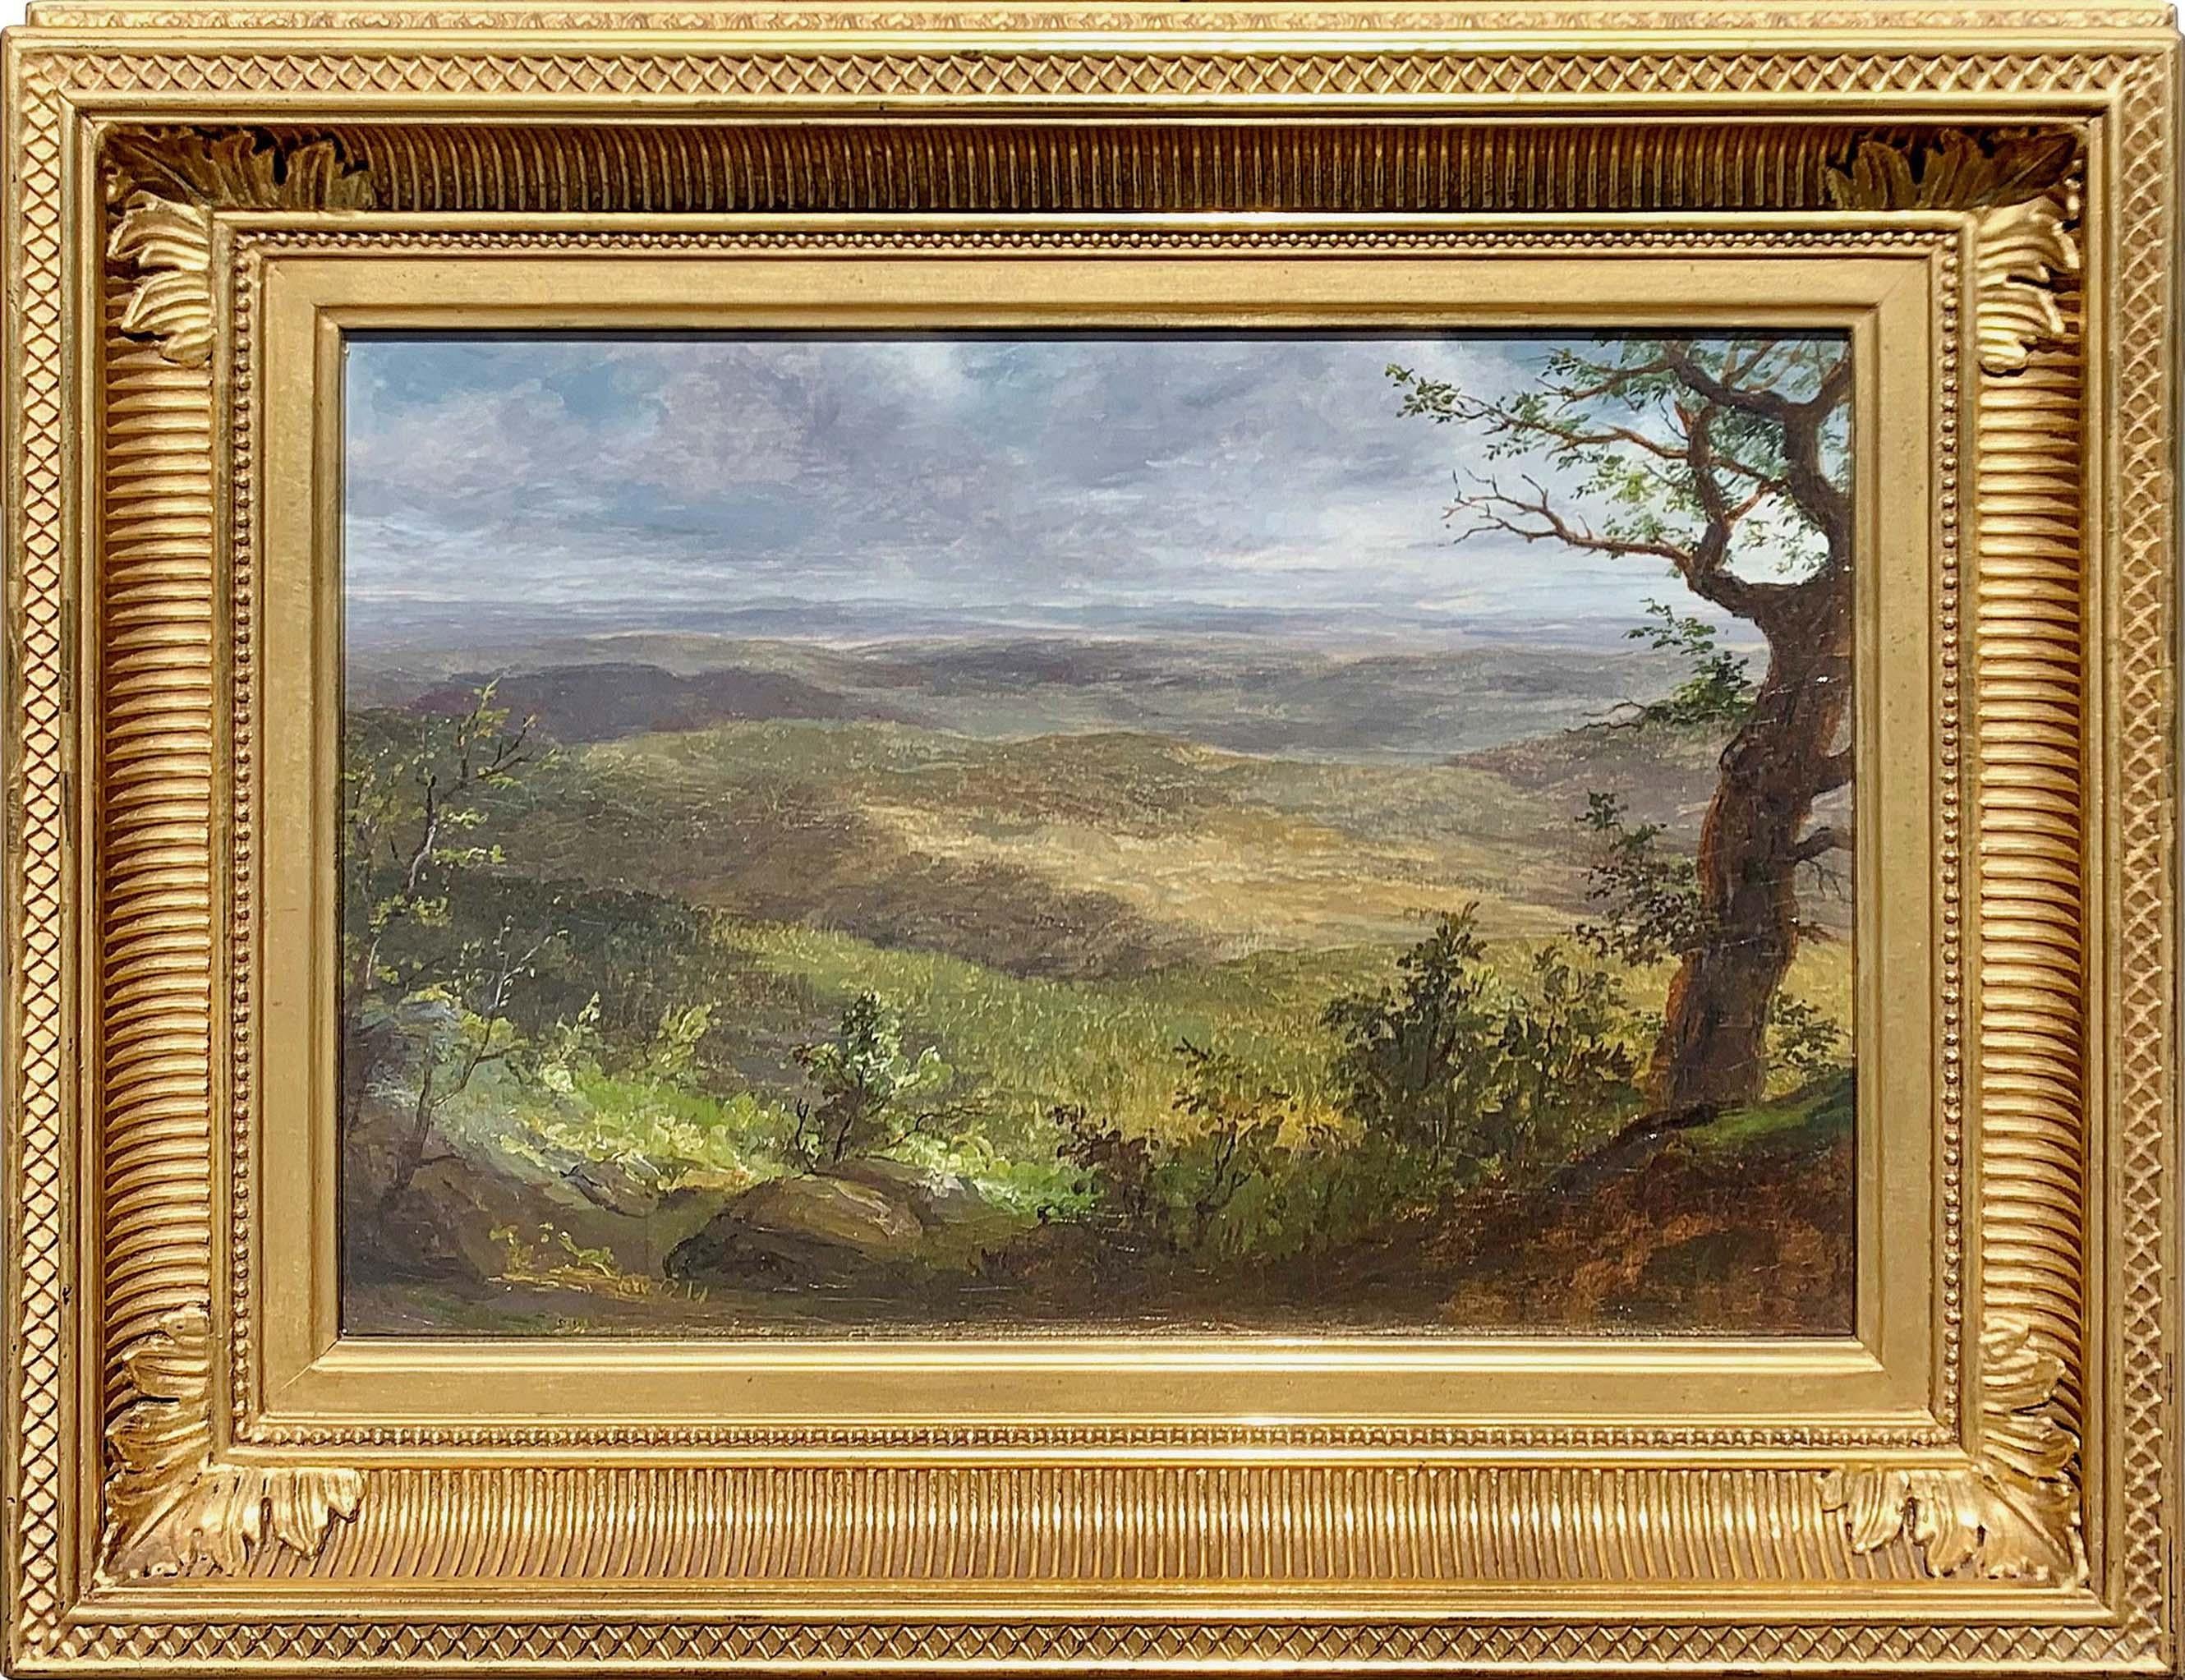 Shawangunk Mountains [View from top of Granit Road Looking Southeast] par l'artiste Lemuel Maynard Wiles (1826-1905) de l'école de la rivière Hudson est une huile sur toile montée sur carton et mesure 10 x 15 pouces. Le tableau est signé et porte